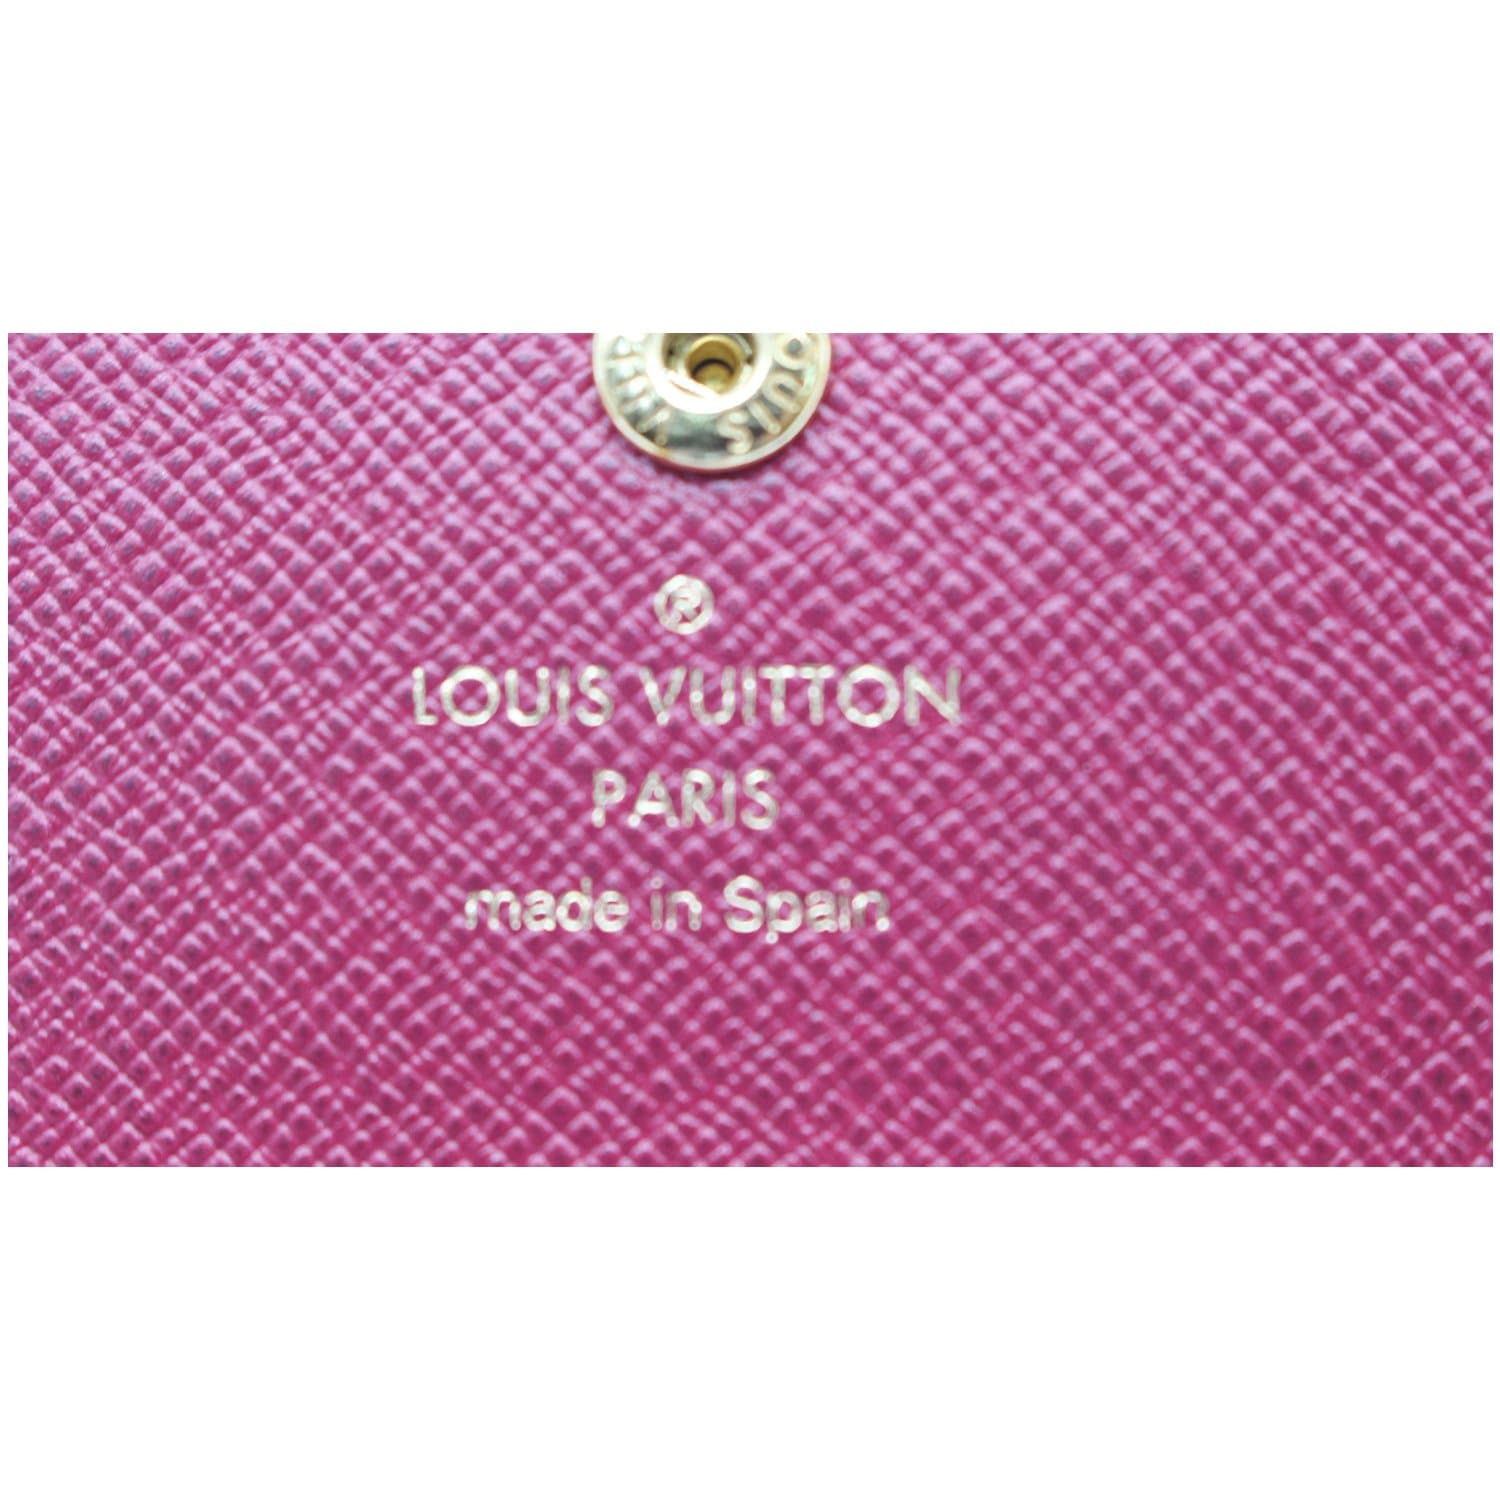 🔥NEW LOUIS VUITTON Rosalie Coin Purse Wallet Monogram Light Pink GIFT HOT  RARE